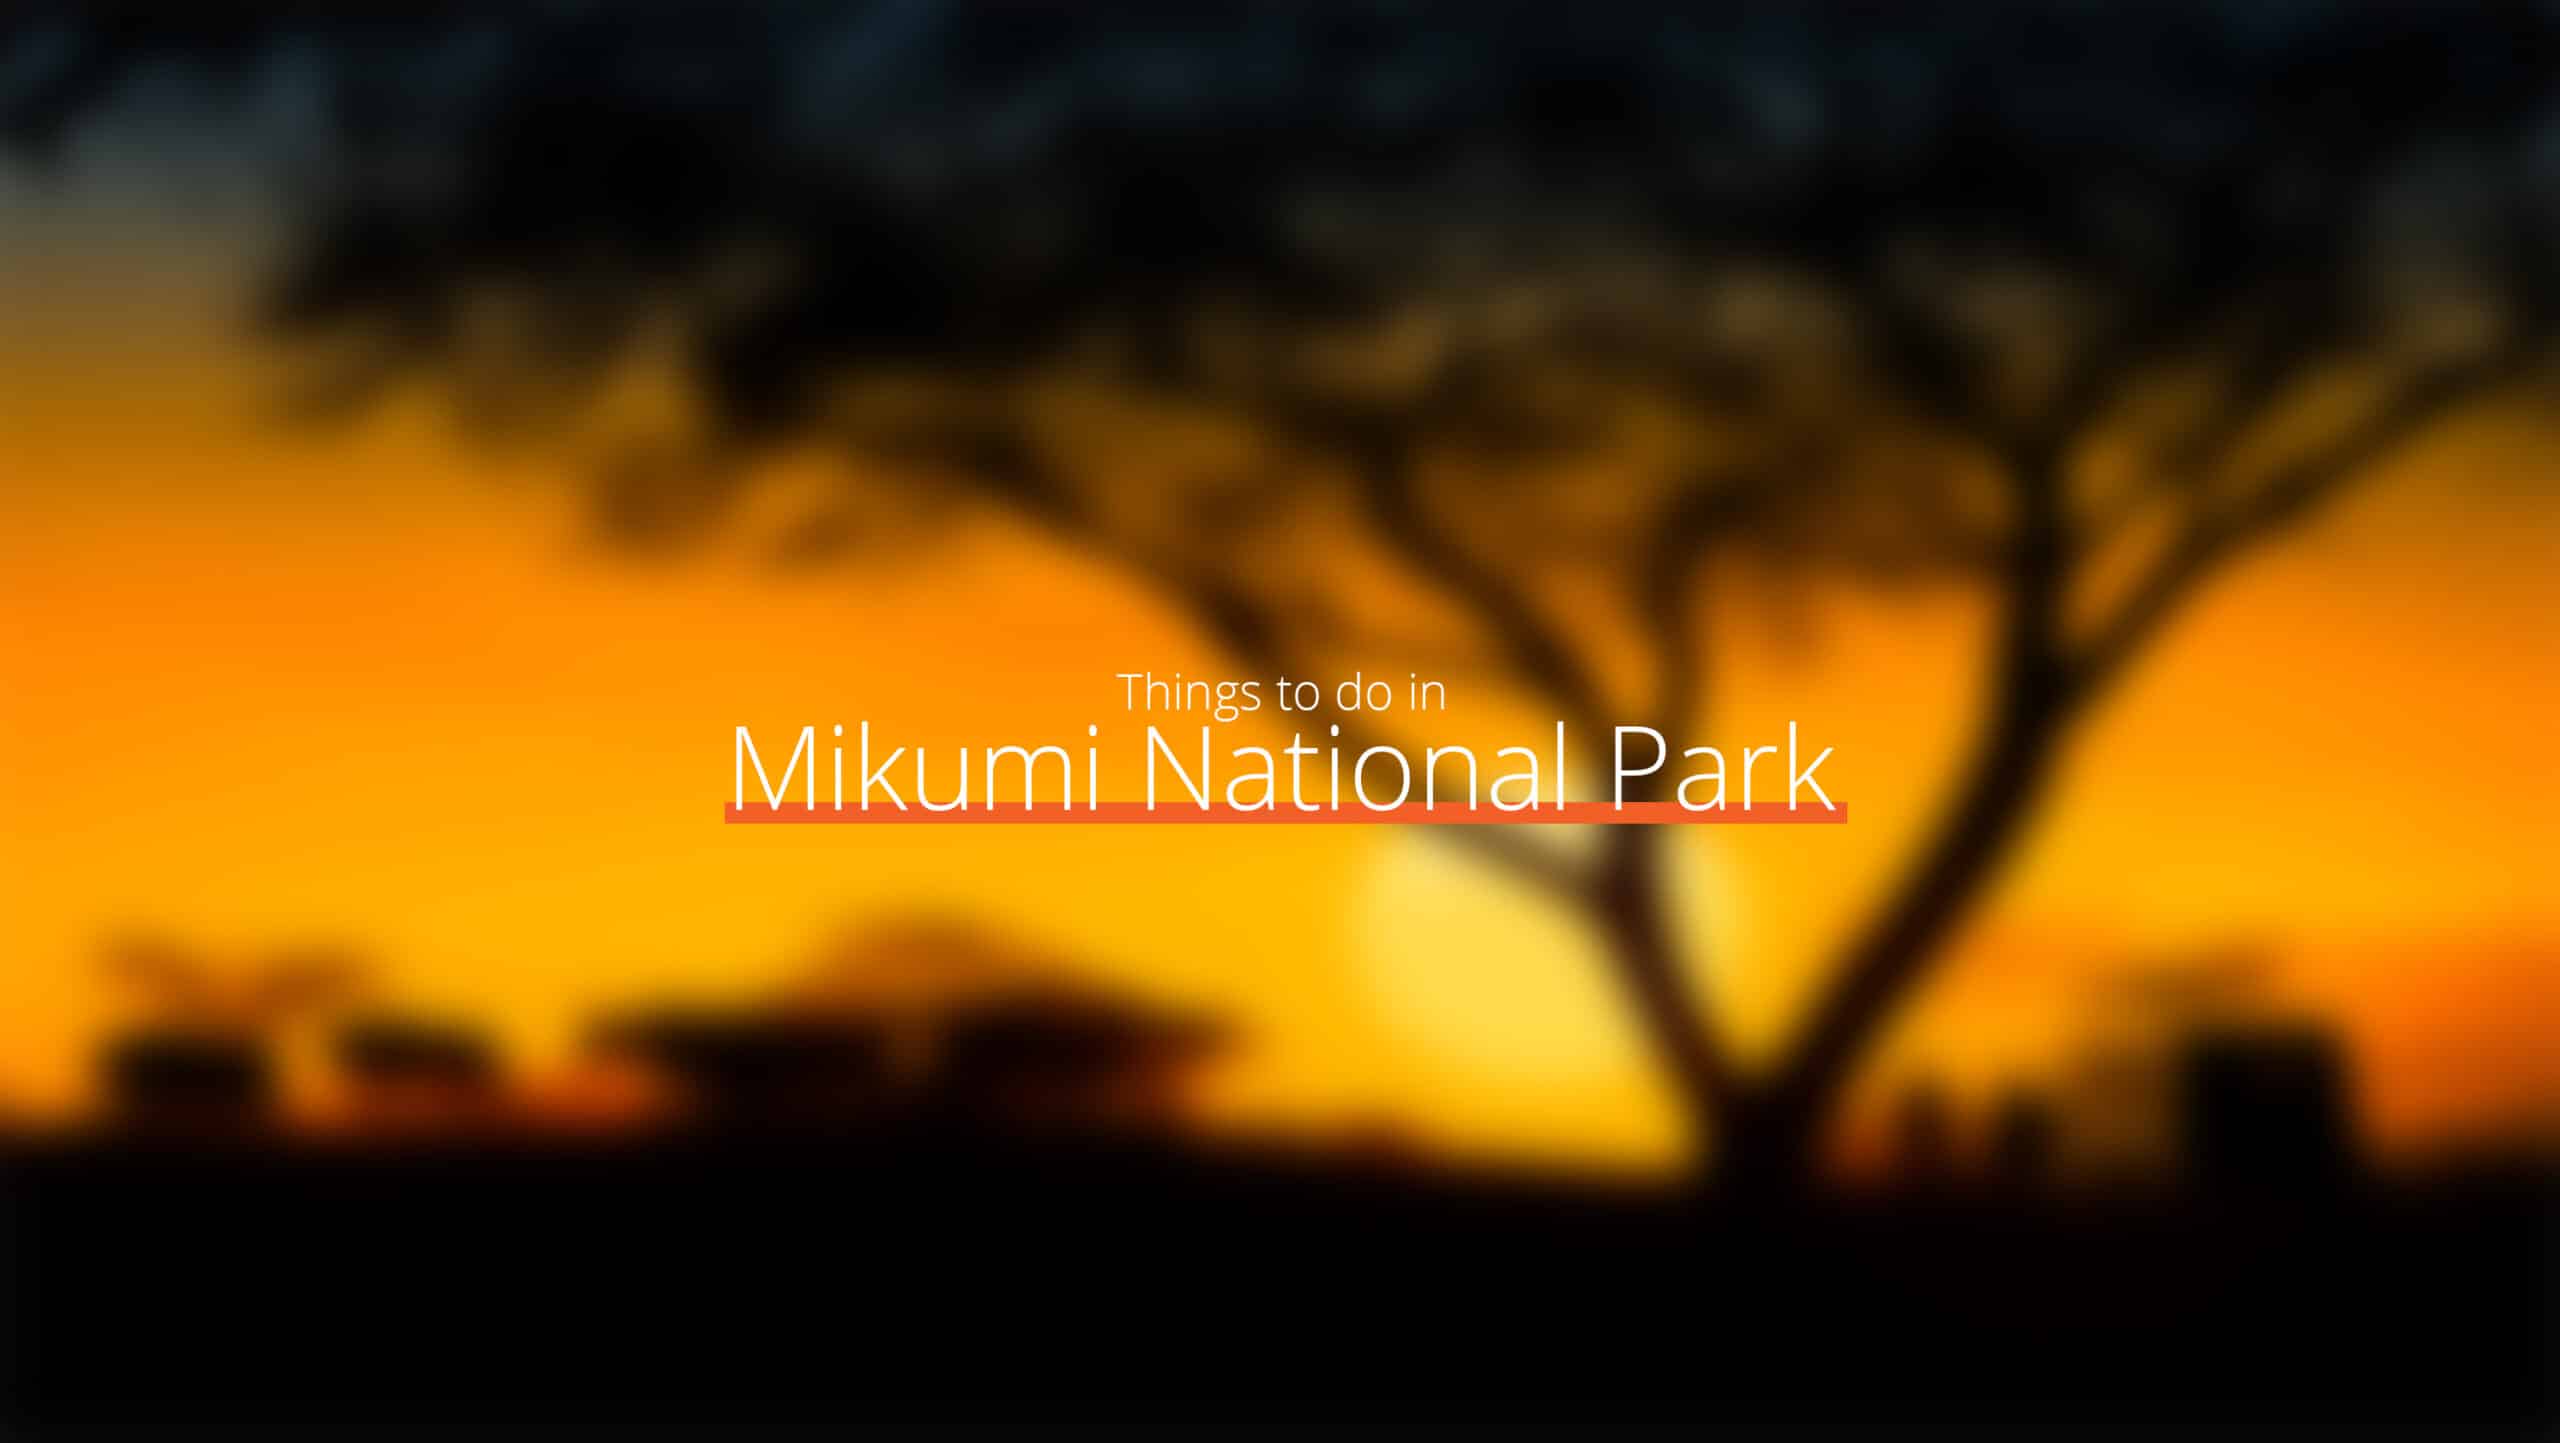 坦桑尼亚 - mikumi 国家公园 1 缩放比例 - 西部赛道的去处